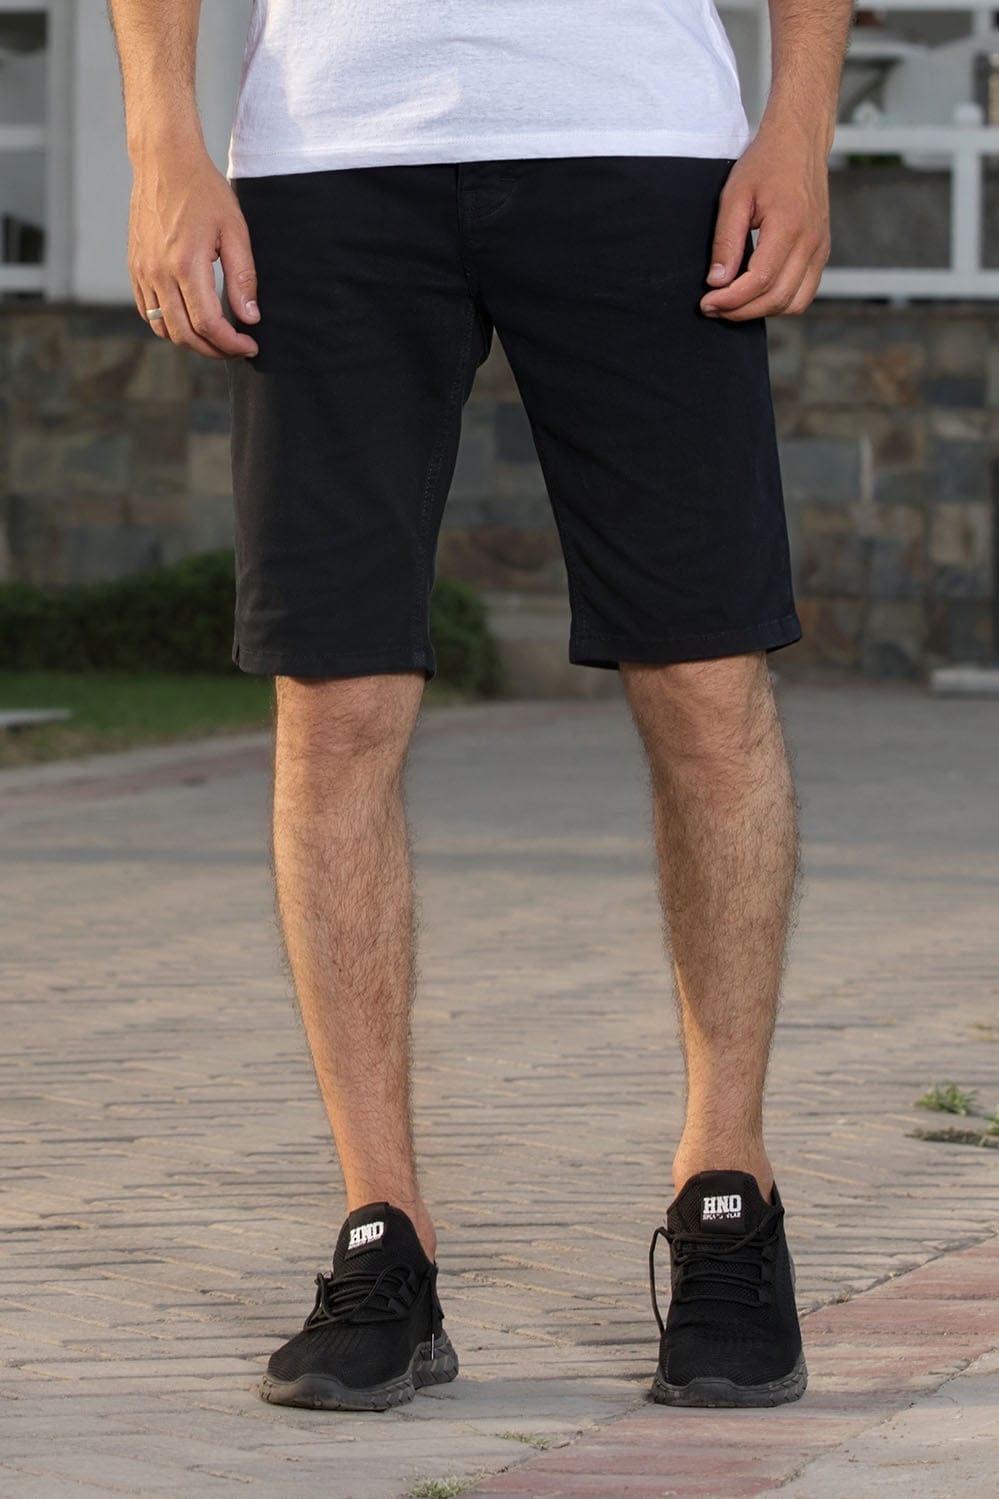 Hope Not Out by Shahid Afridi Men Shorts Basic Black Cotton Shorts